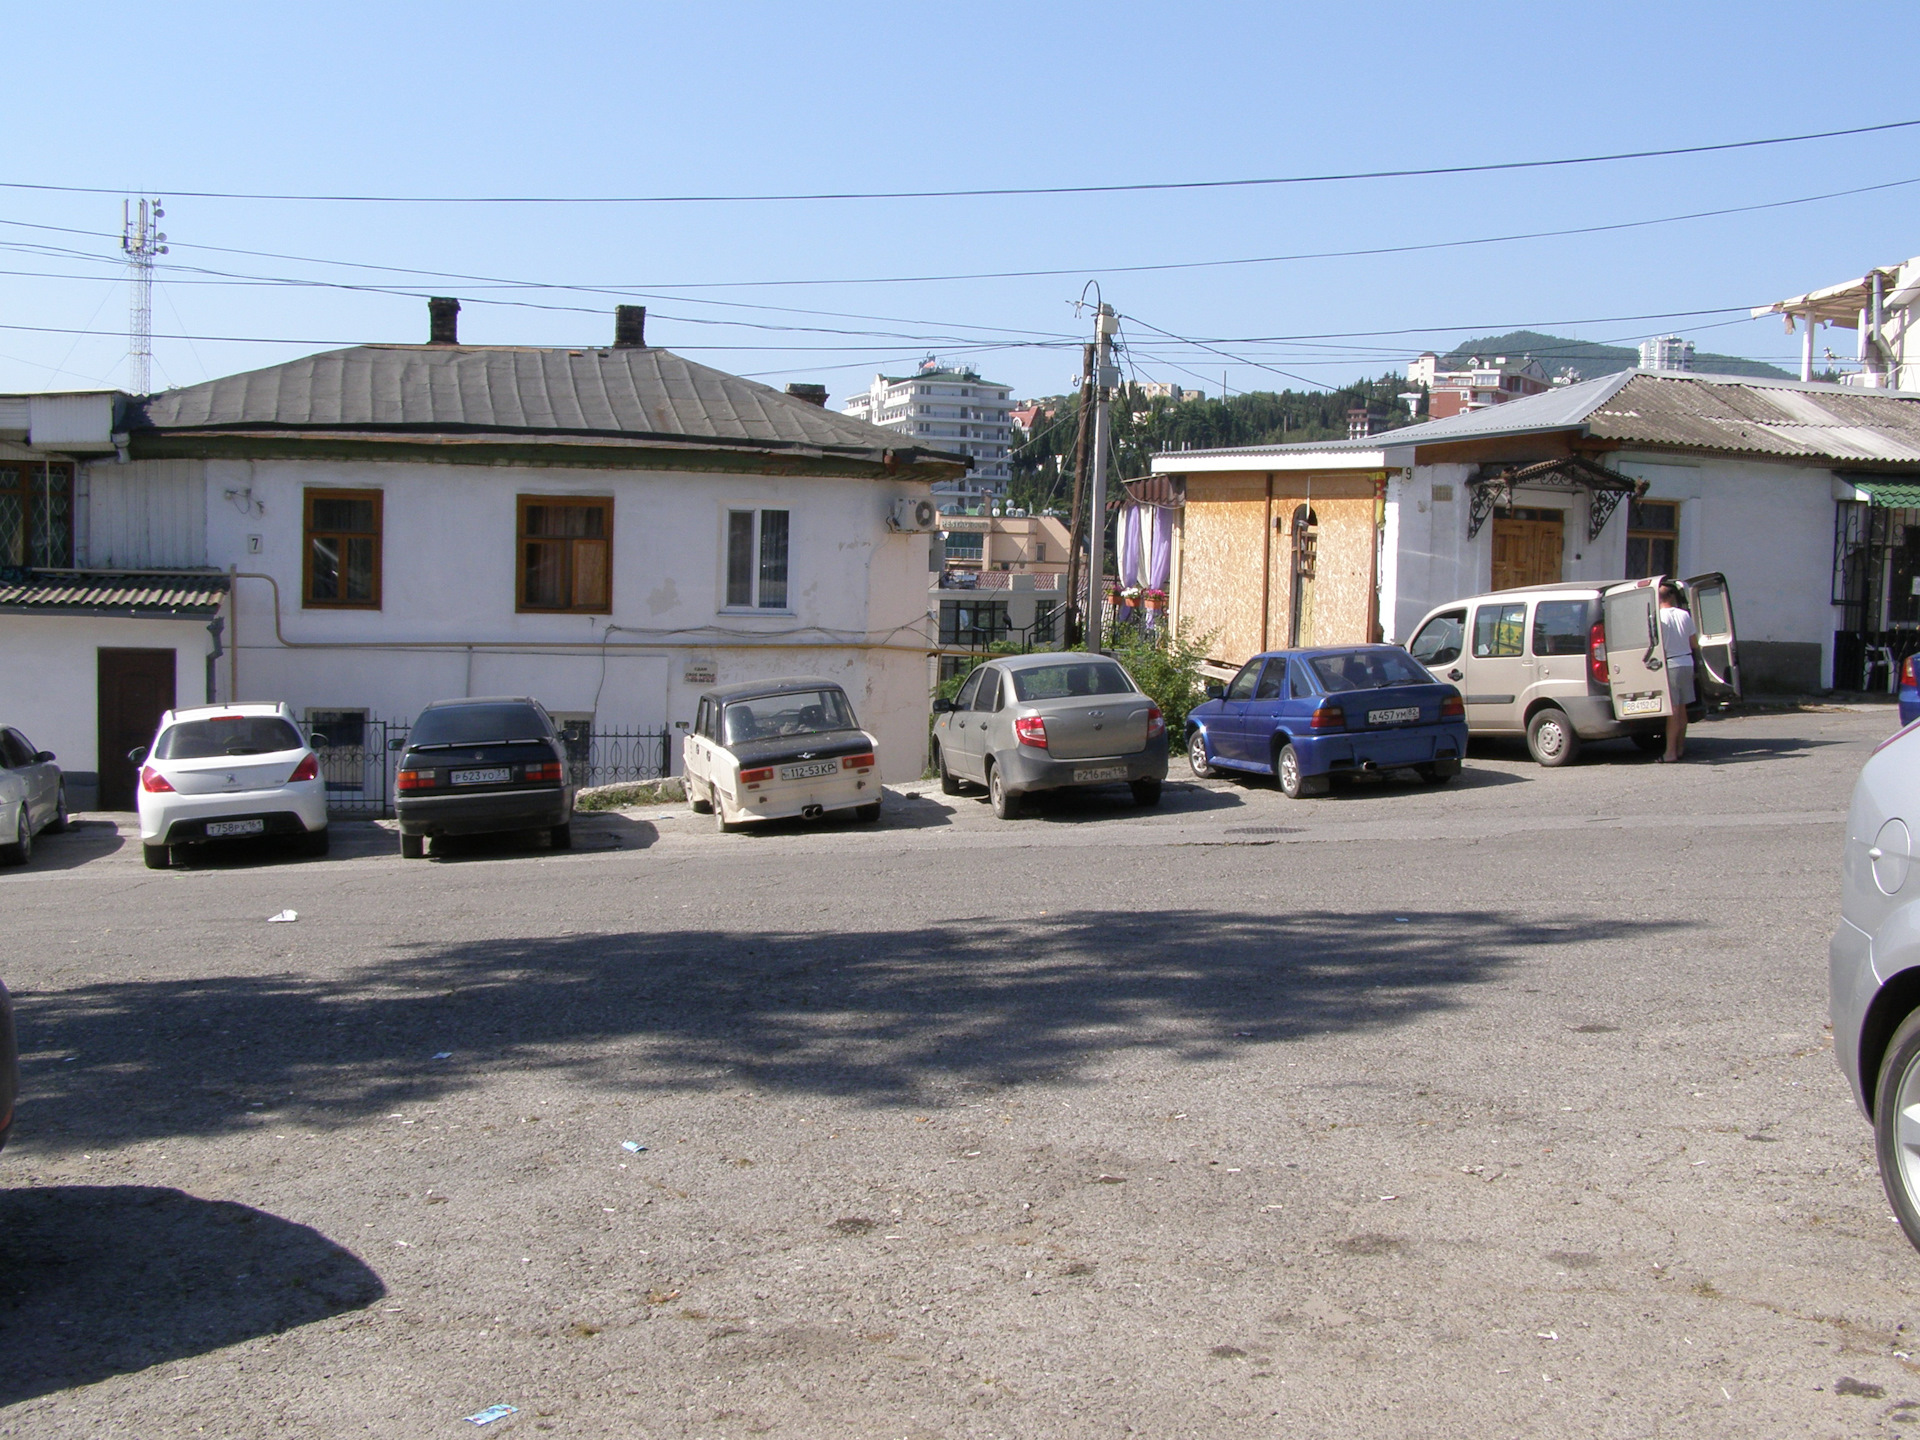 Дом где снимали кавказскую пленницу фото сейчас